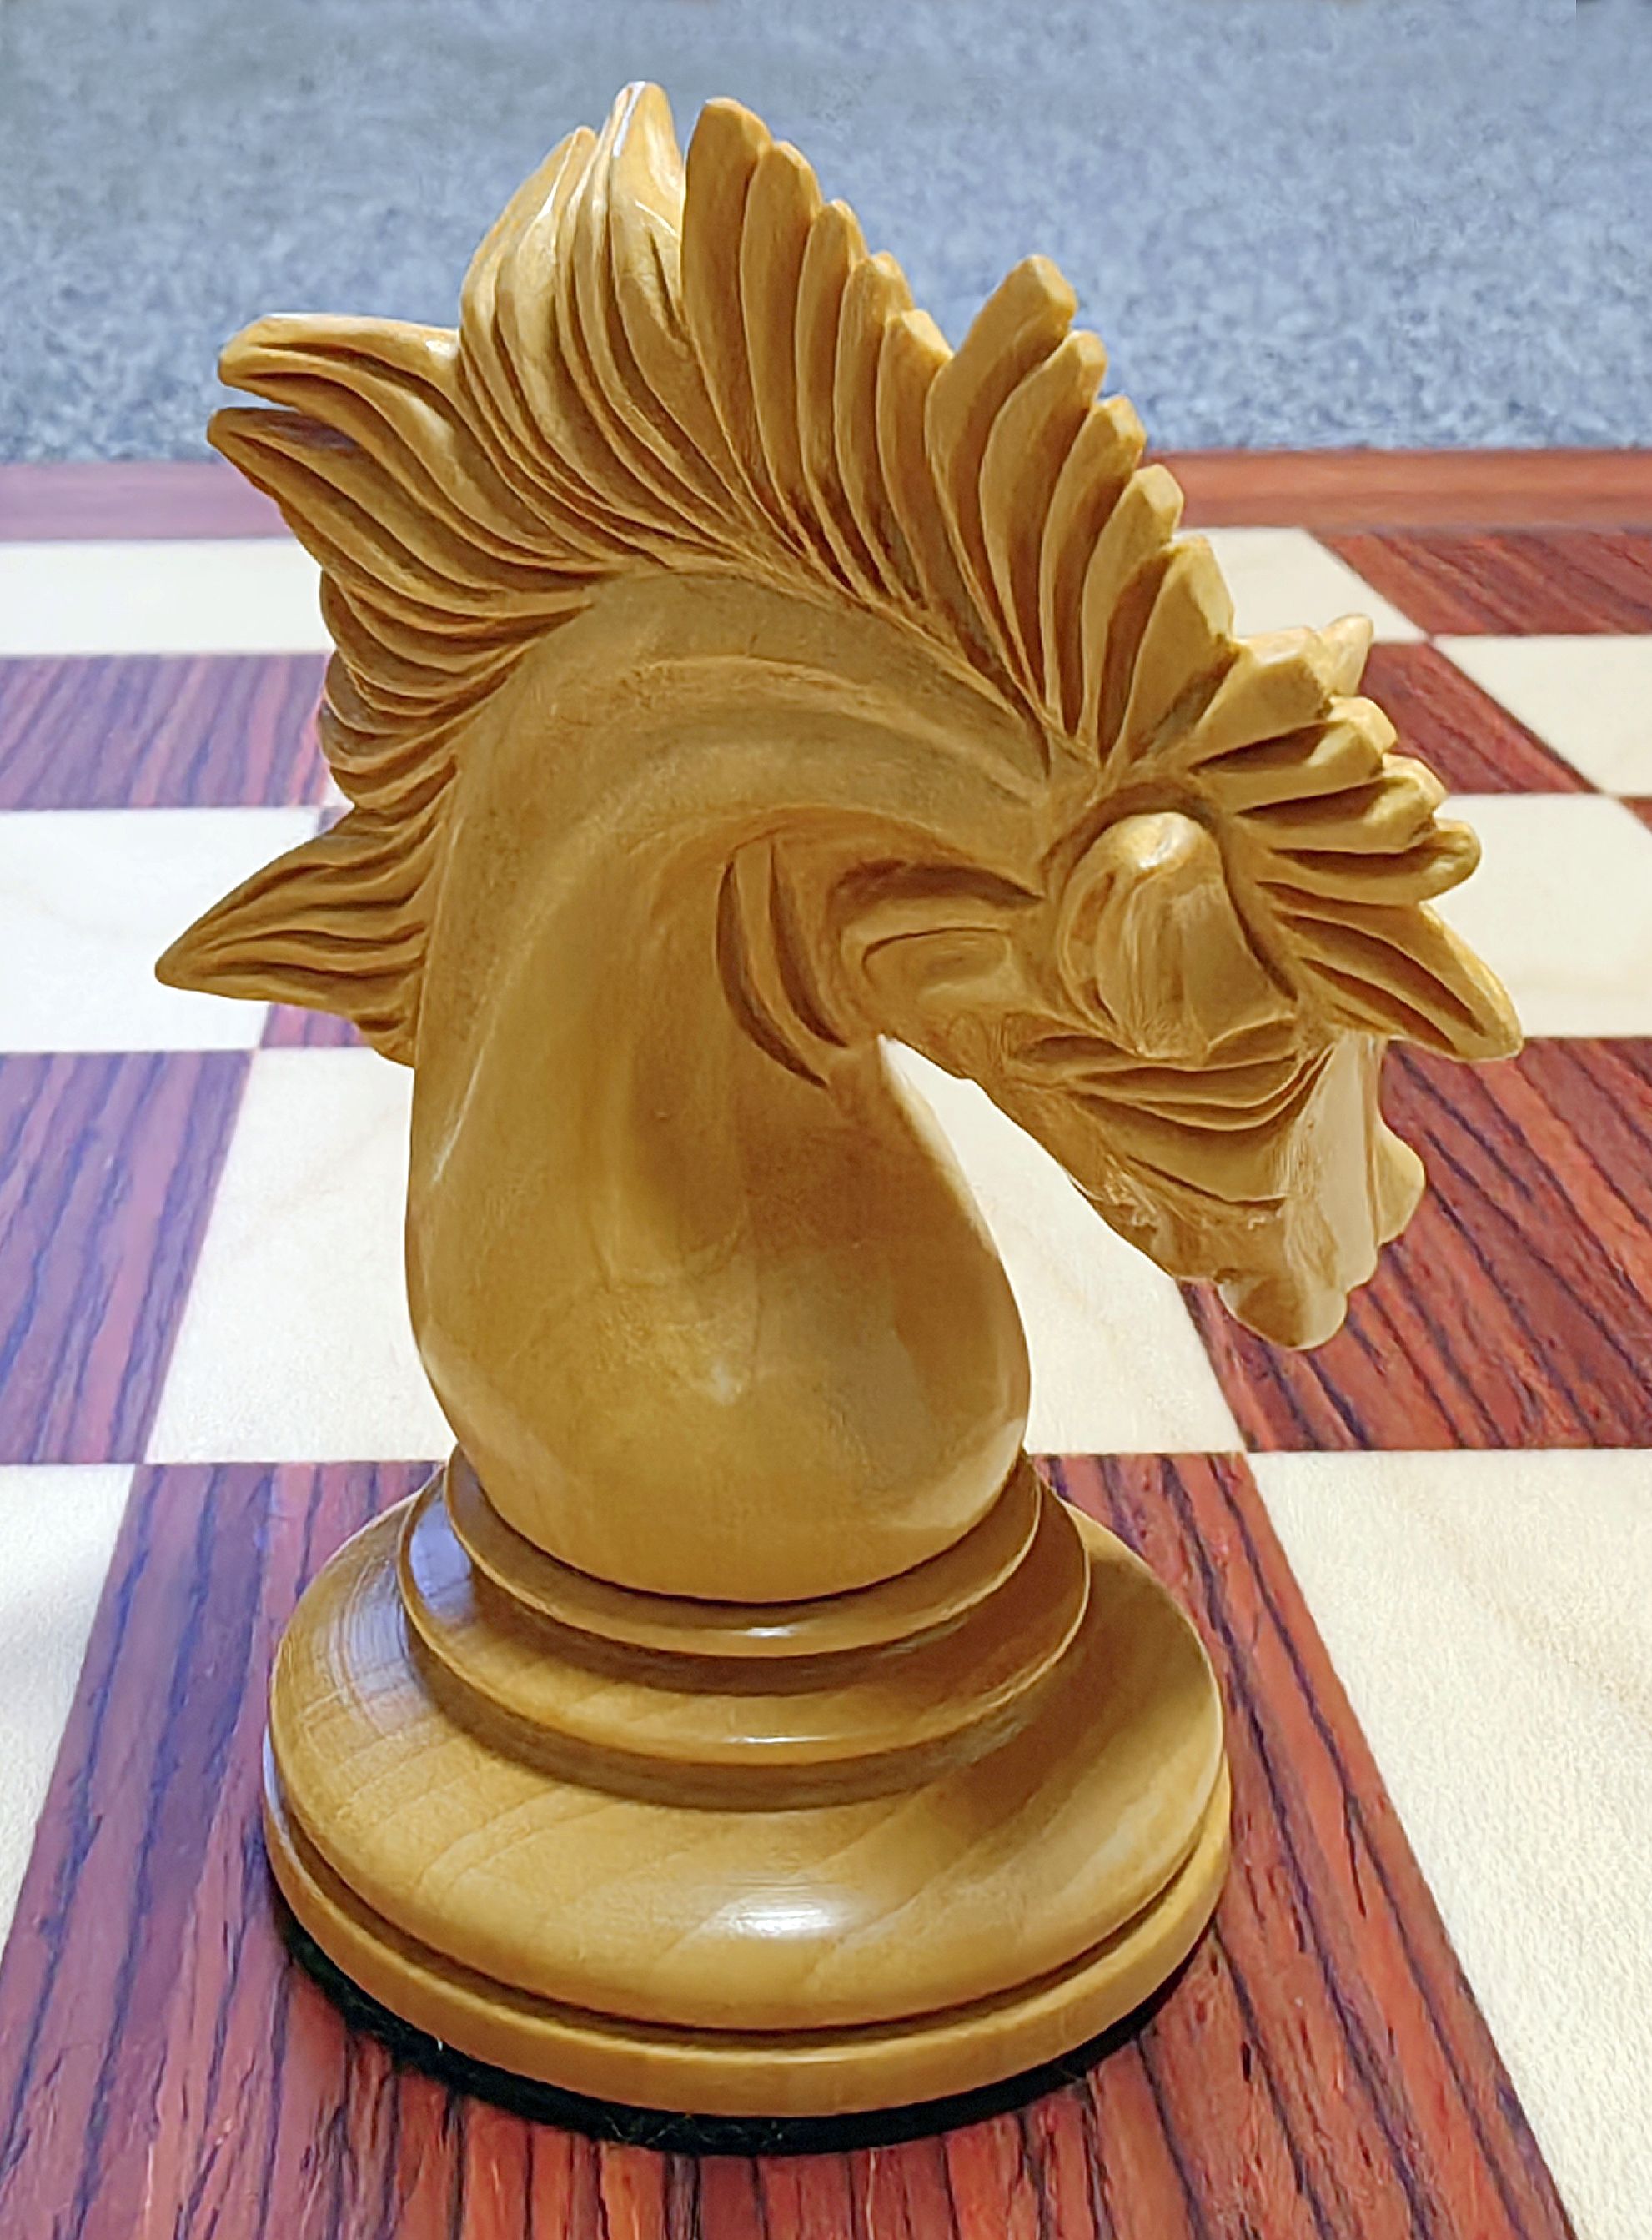 fancy beautiful chess set